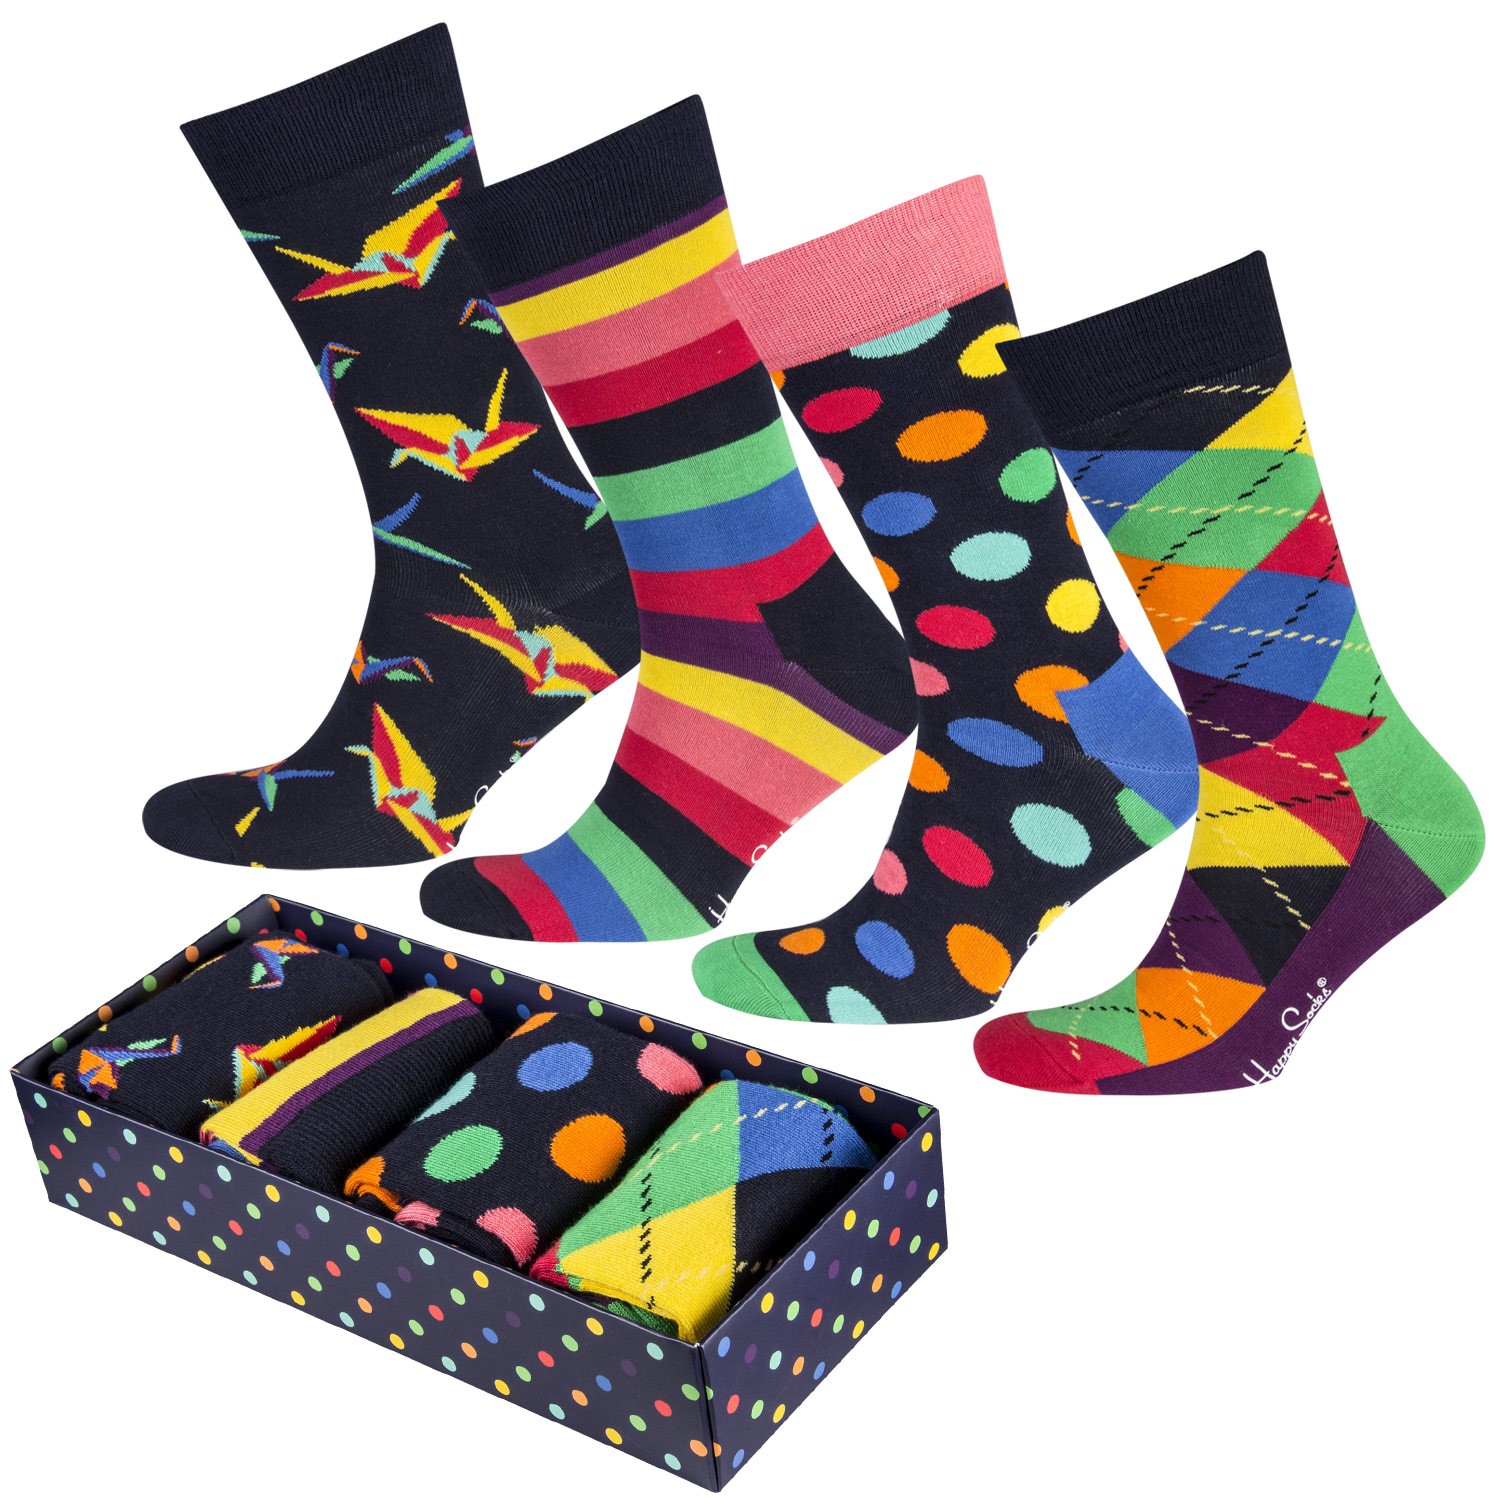 Happy Socks Origami Socks Gift Box